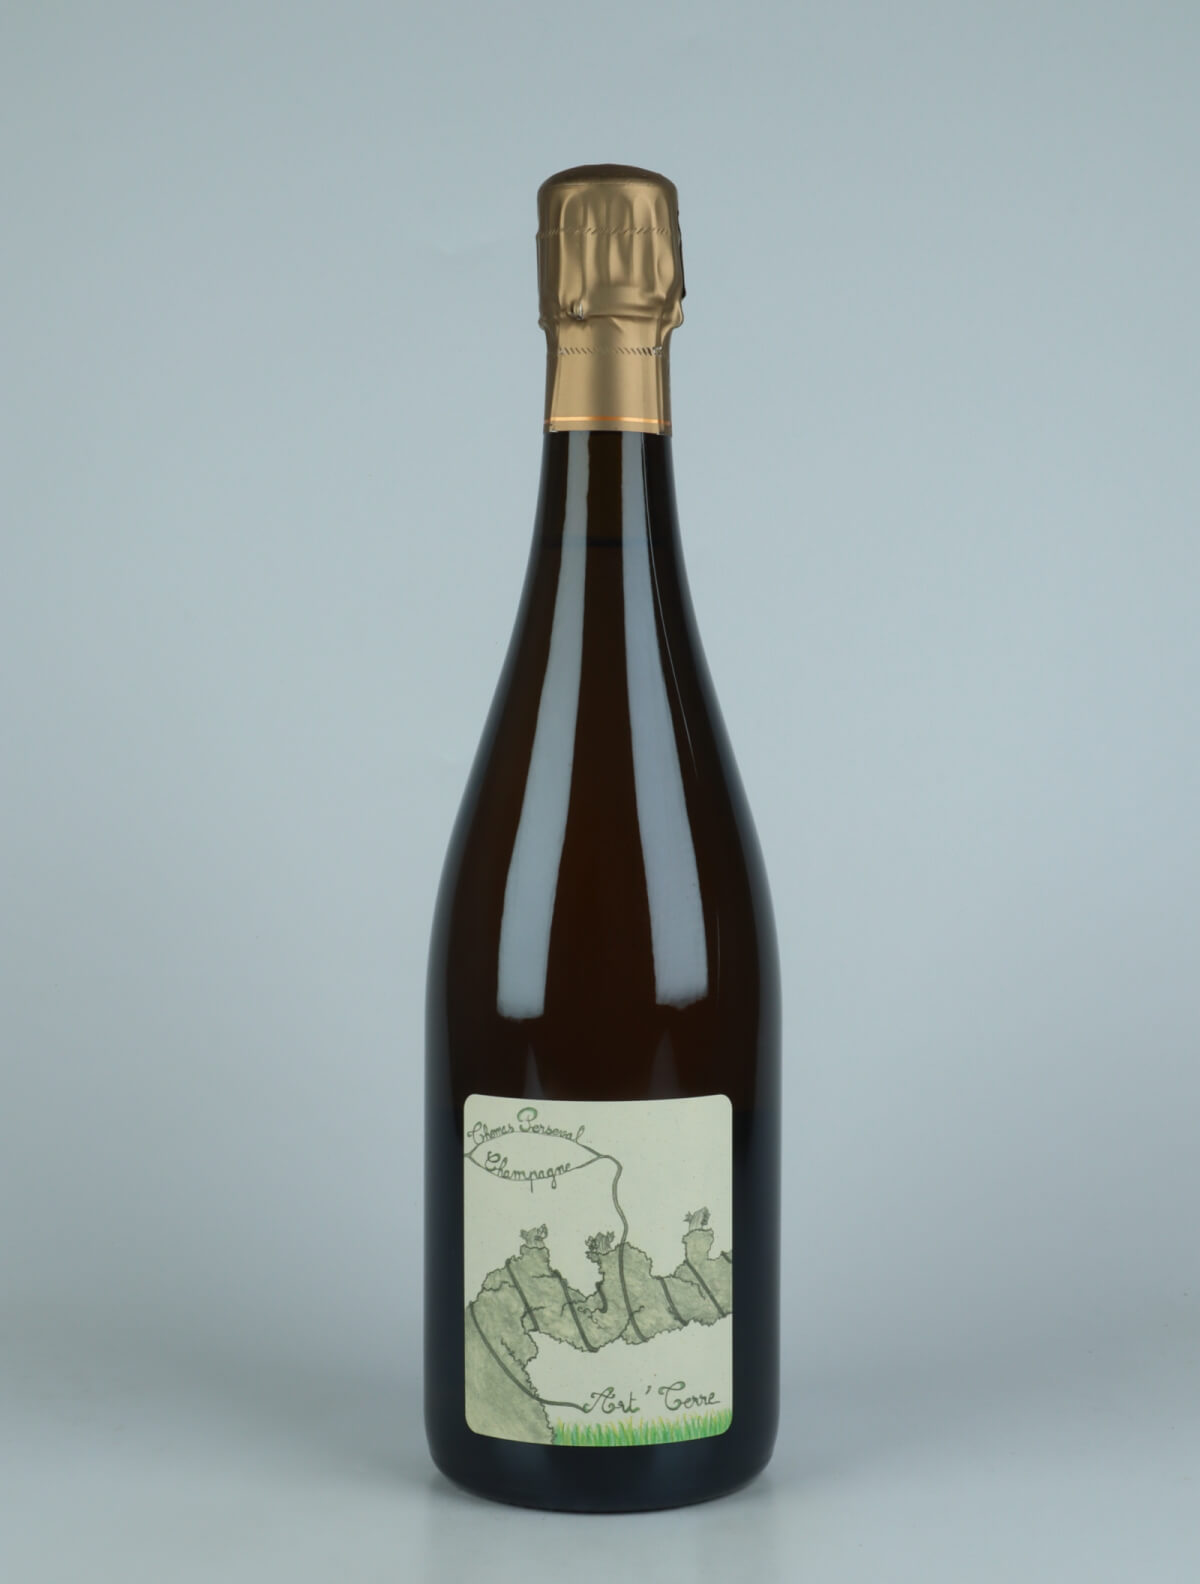 En flaske 2020 Chamery 1. Cru - Art'Terre Mousserende fra Thomas Perseval, Champagne i Frankrig